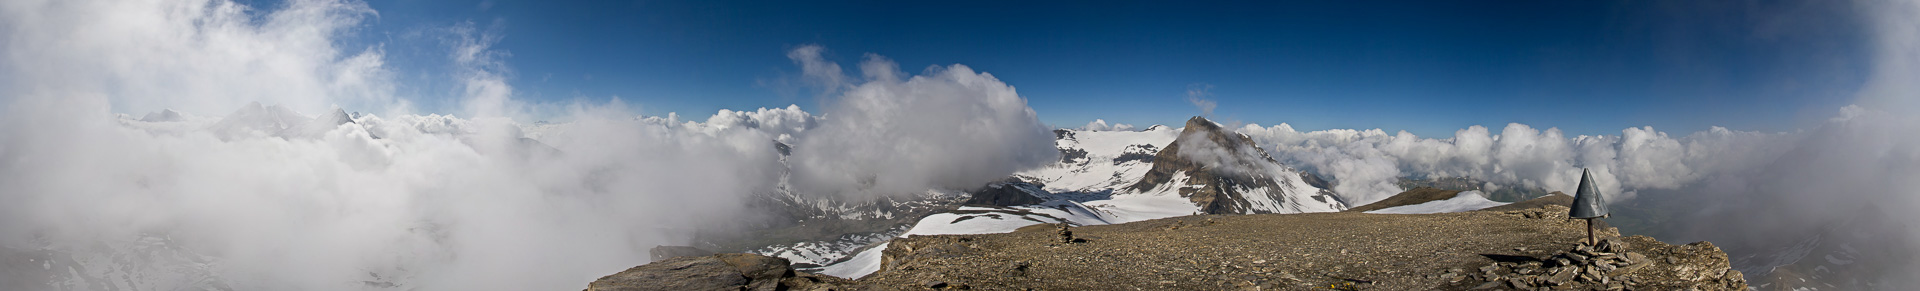 Gipfelpanorama mit Wolken.